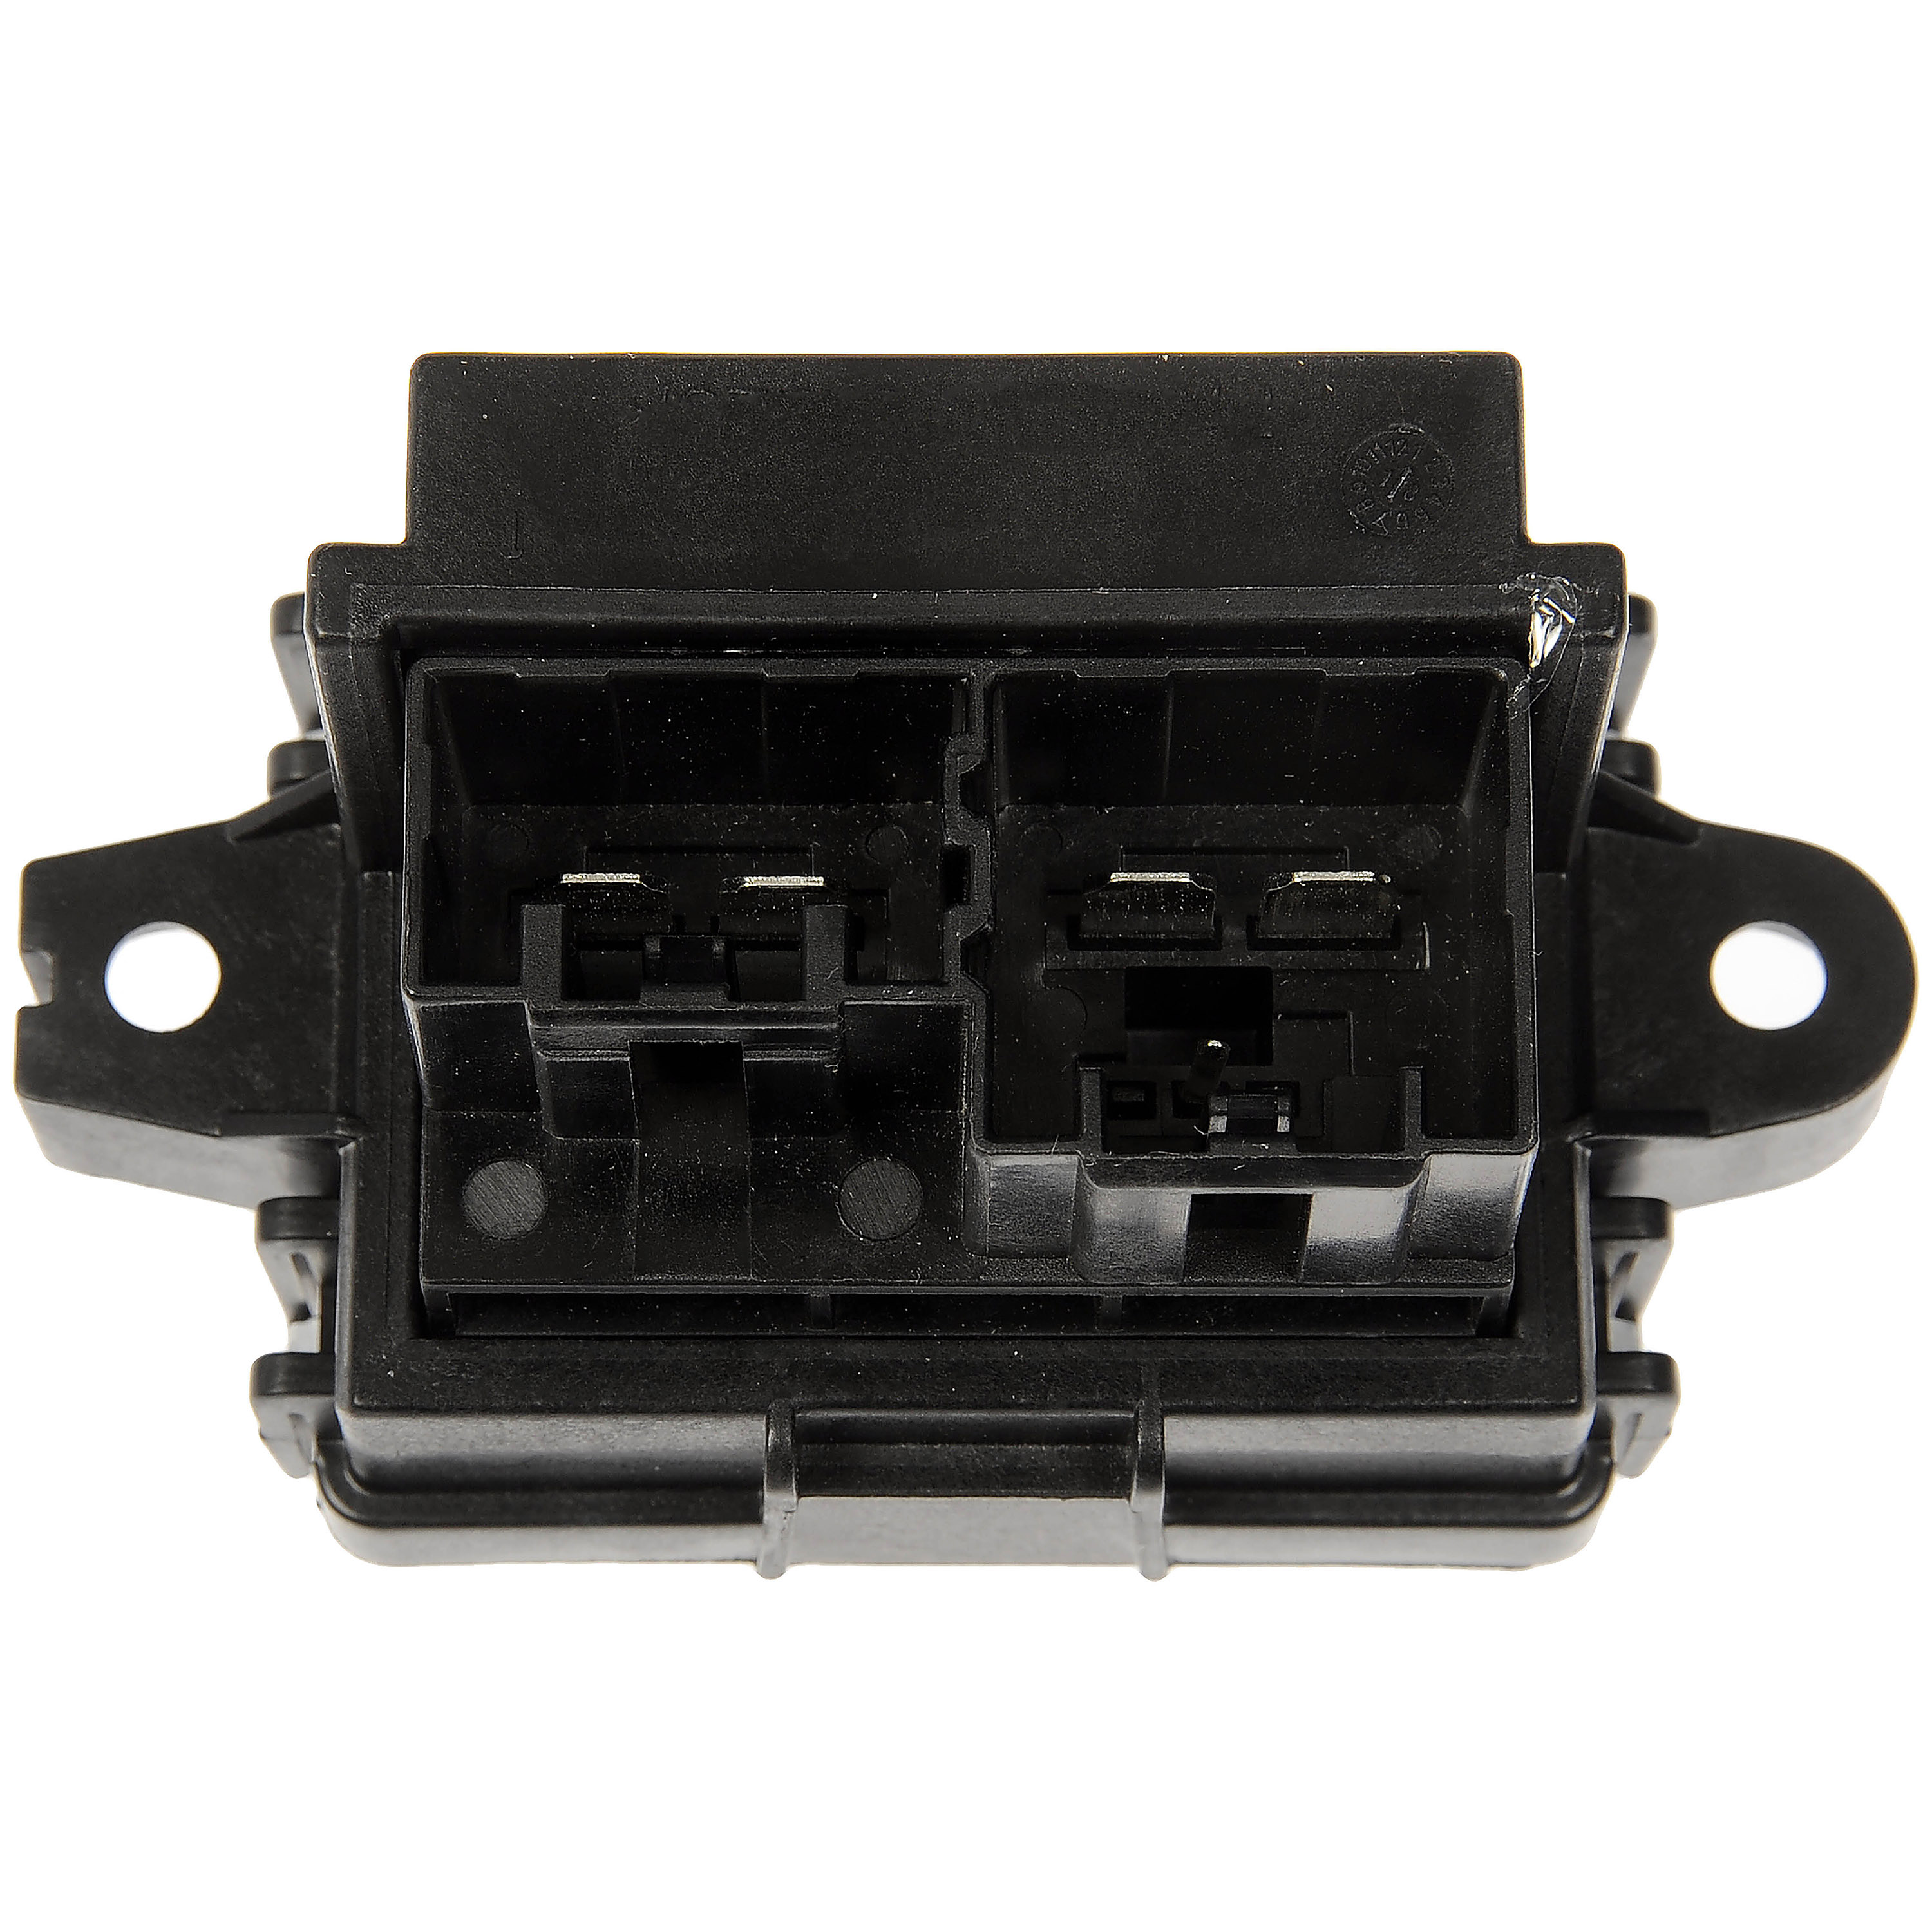 Dorman 973-069 Rear Blower Motor Resistor Kit for Select Chevrolet/GMC 